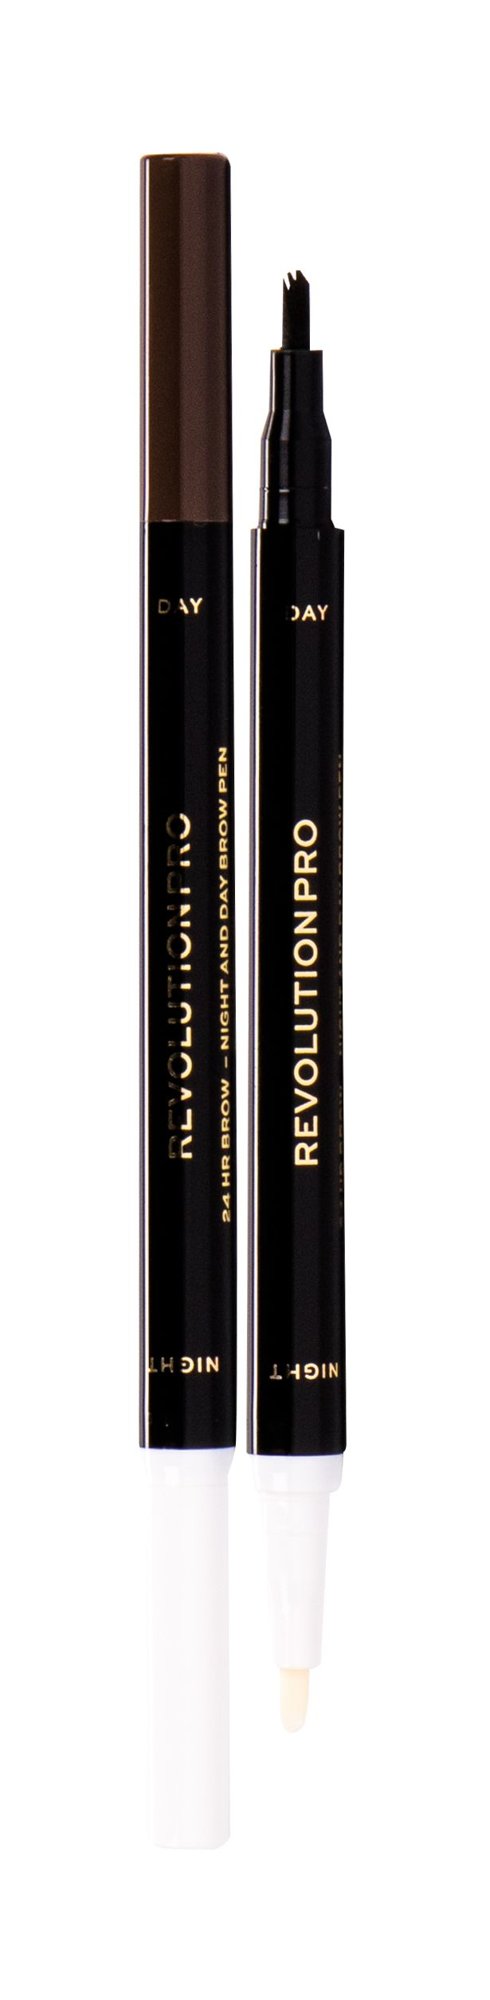 Makeup Revolution London Revolution PRO Day & Night Brow Pen 1,6ml antakių pieštukas